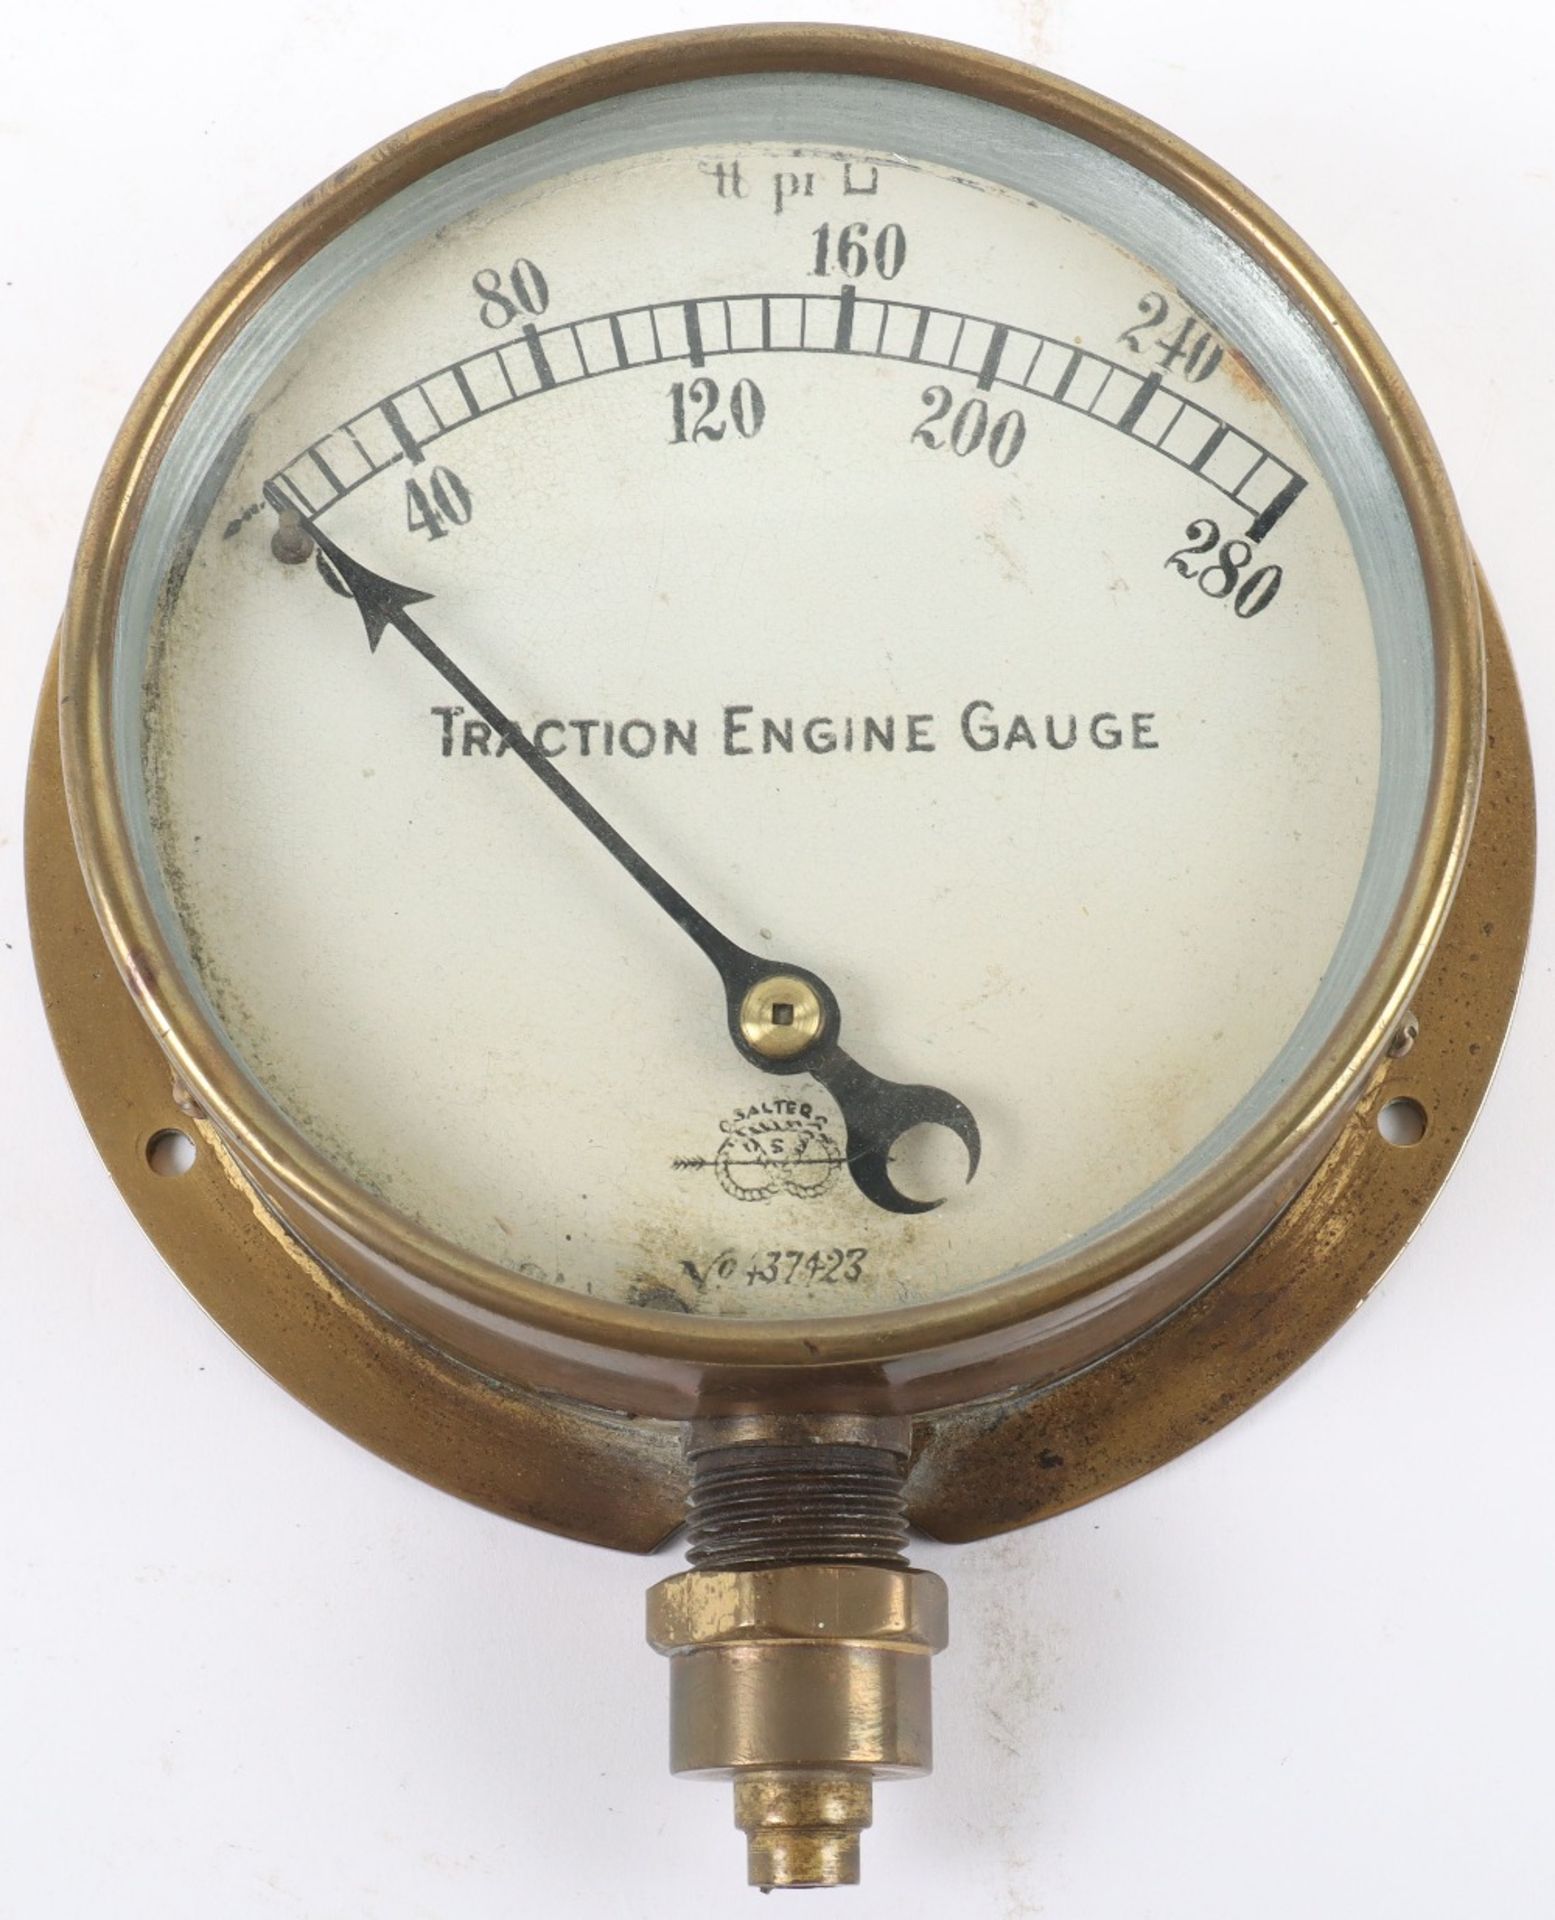 A Salter Traction Engine Gauge pressure gauge